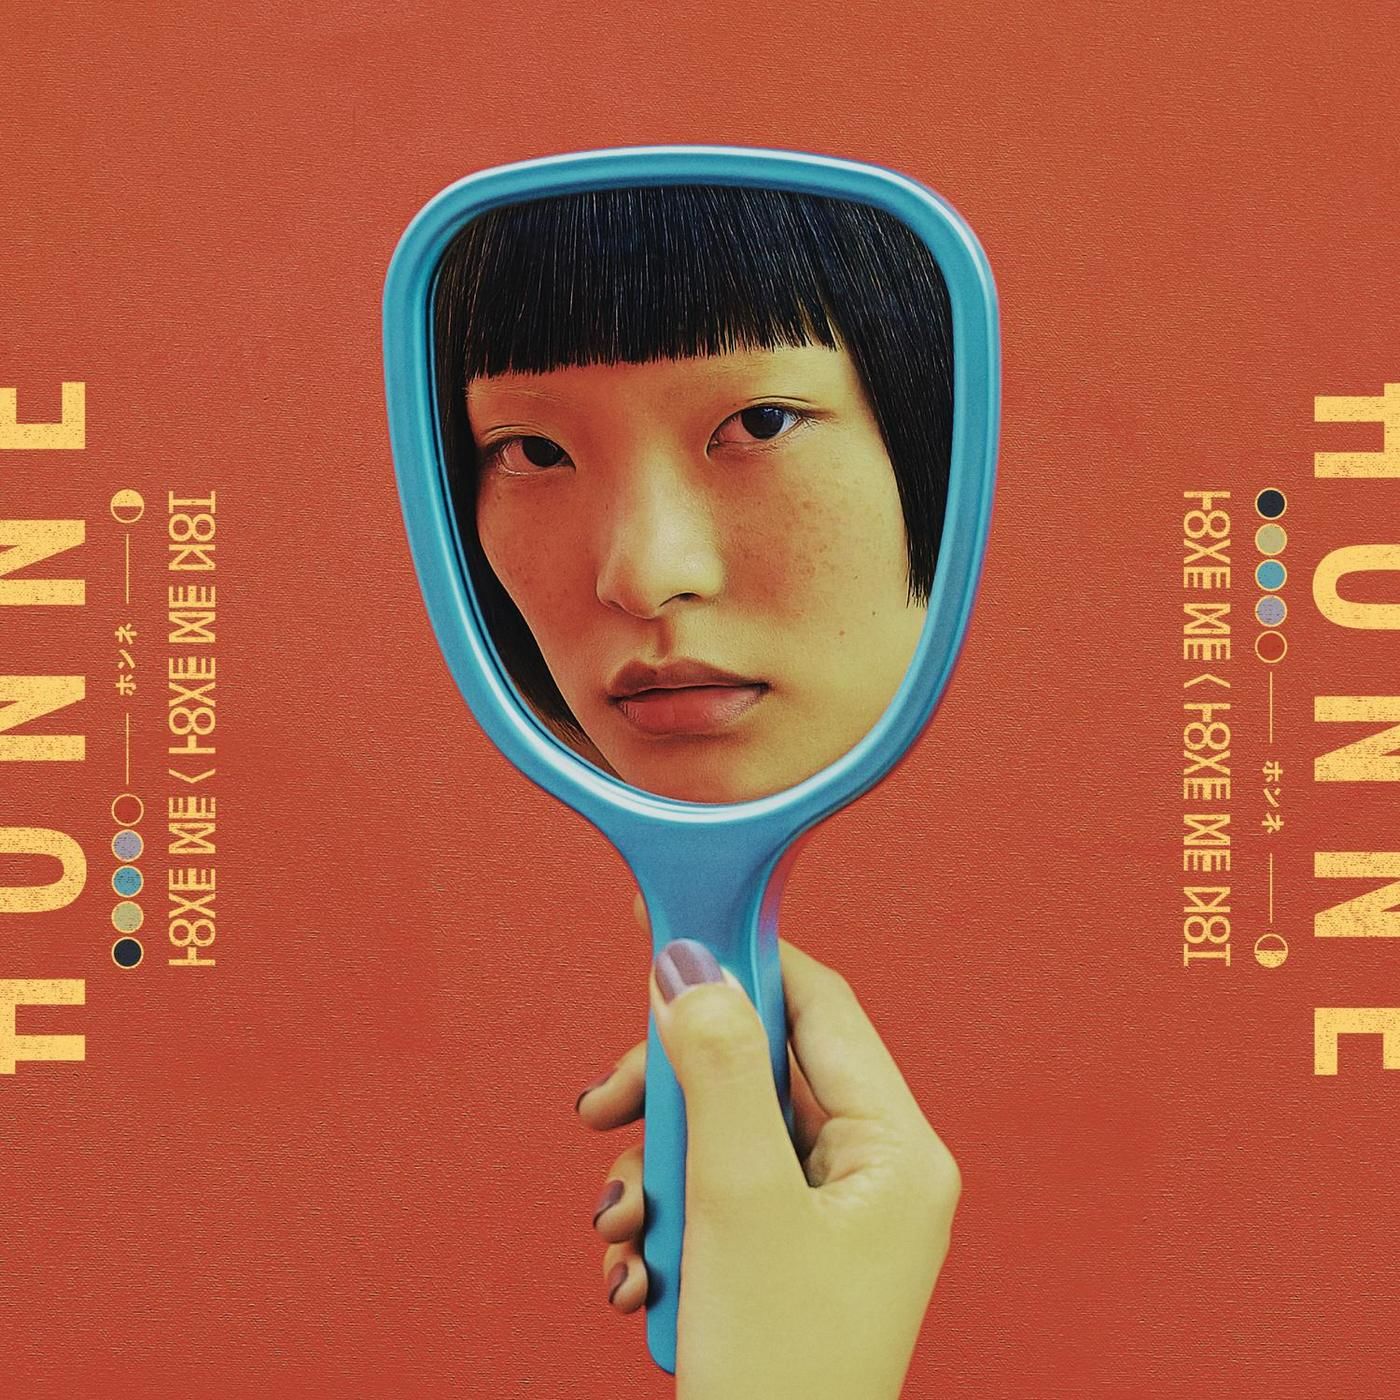 HONNE - Location Unknown ◐ (Feat. Georgia) (신비, 몽환, 활기, 비트, 일렉)